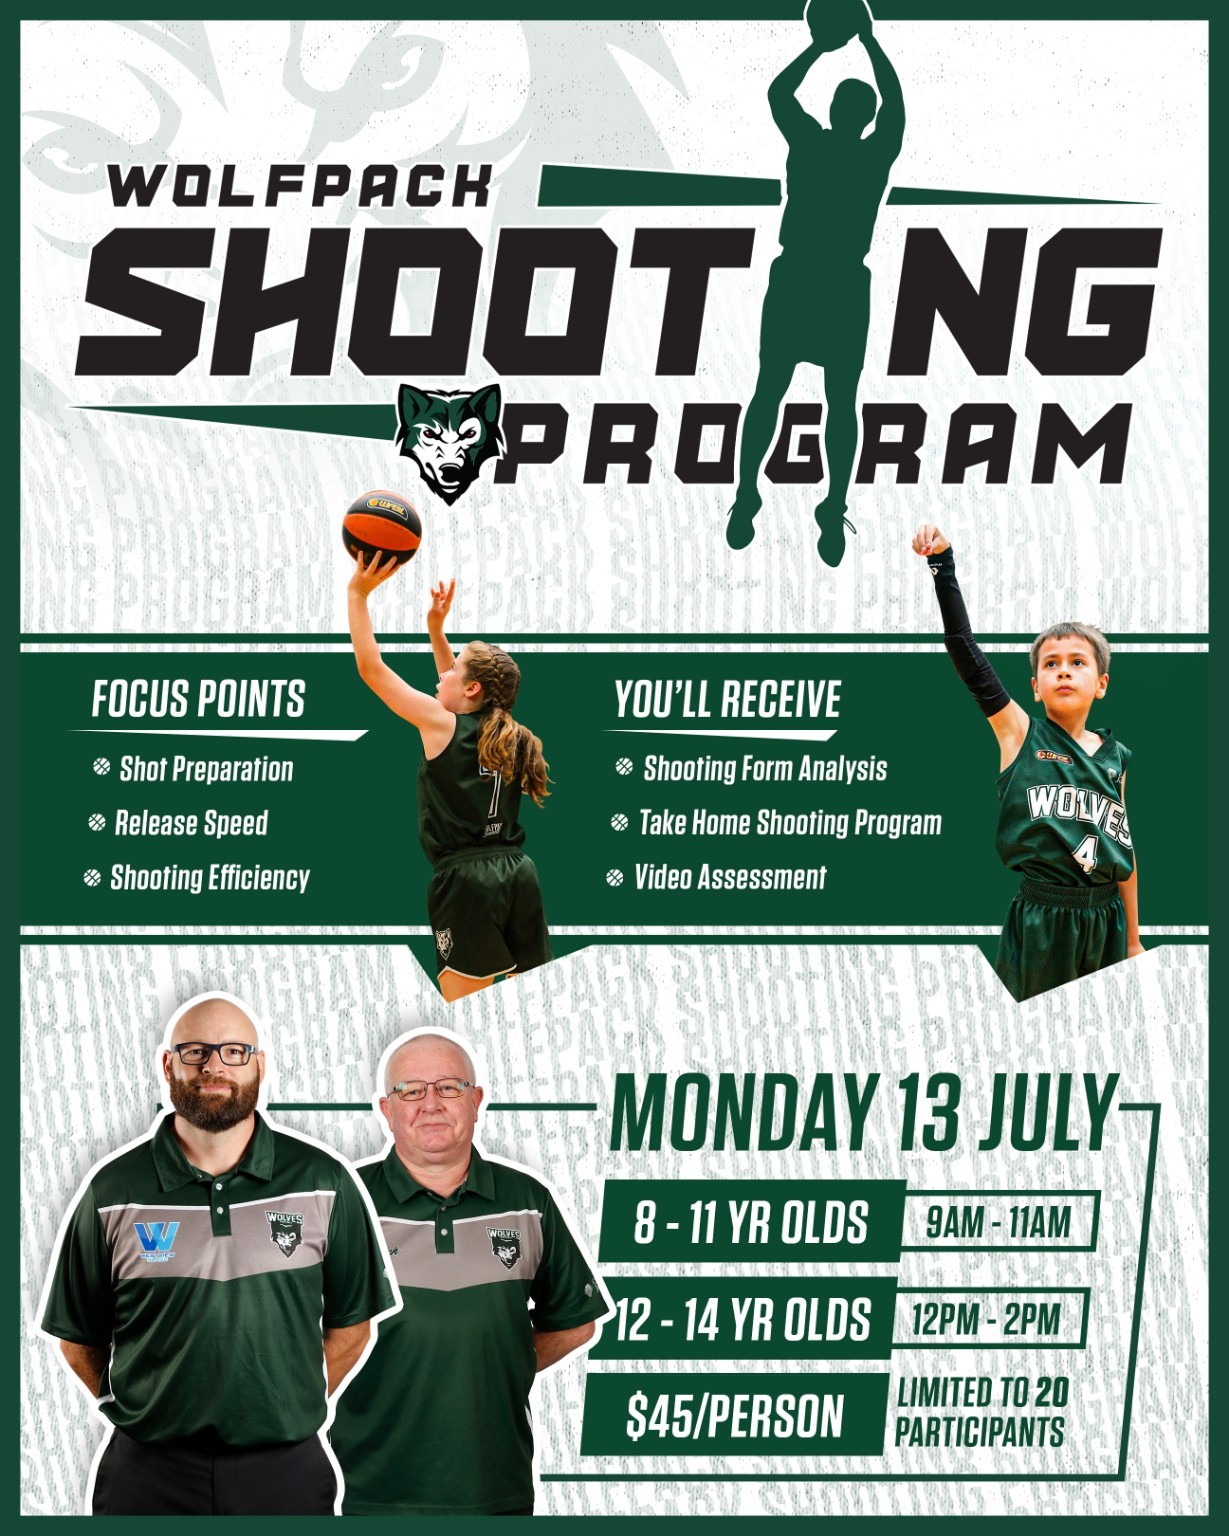 Wolfpack Shooting Program